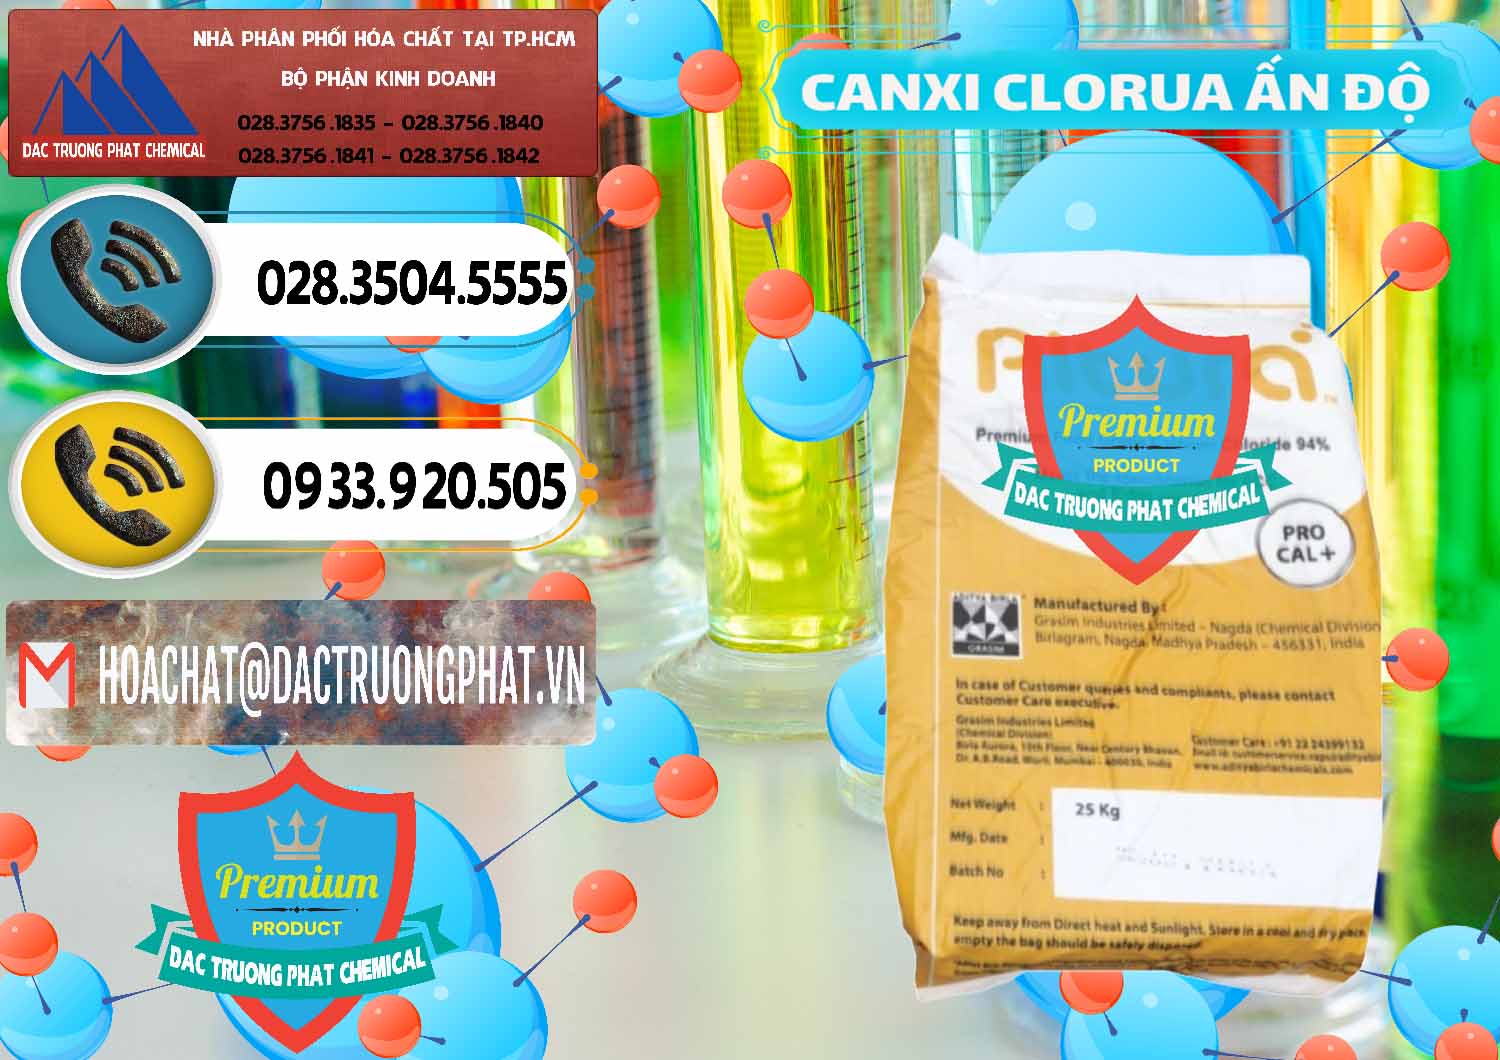 Kinh doanh & bán CaCl2 – Canxi Clorua Food Grade Altura Aditya Birla Grasim Ấn Độ India - 0436 - Công ty chuyên kinh doanh & cung cấp hóa chất tại TP.HCM - hoachatdetnhuom.vn